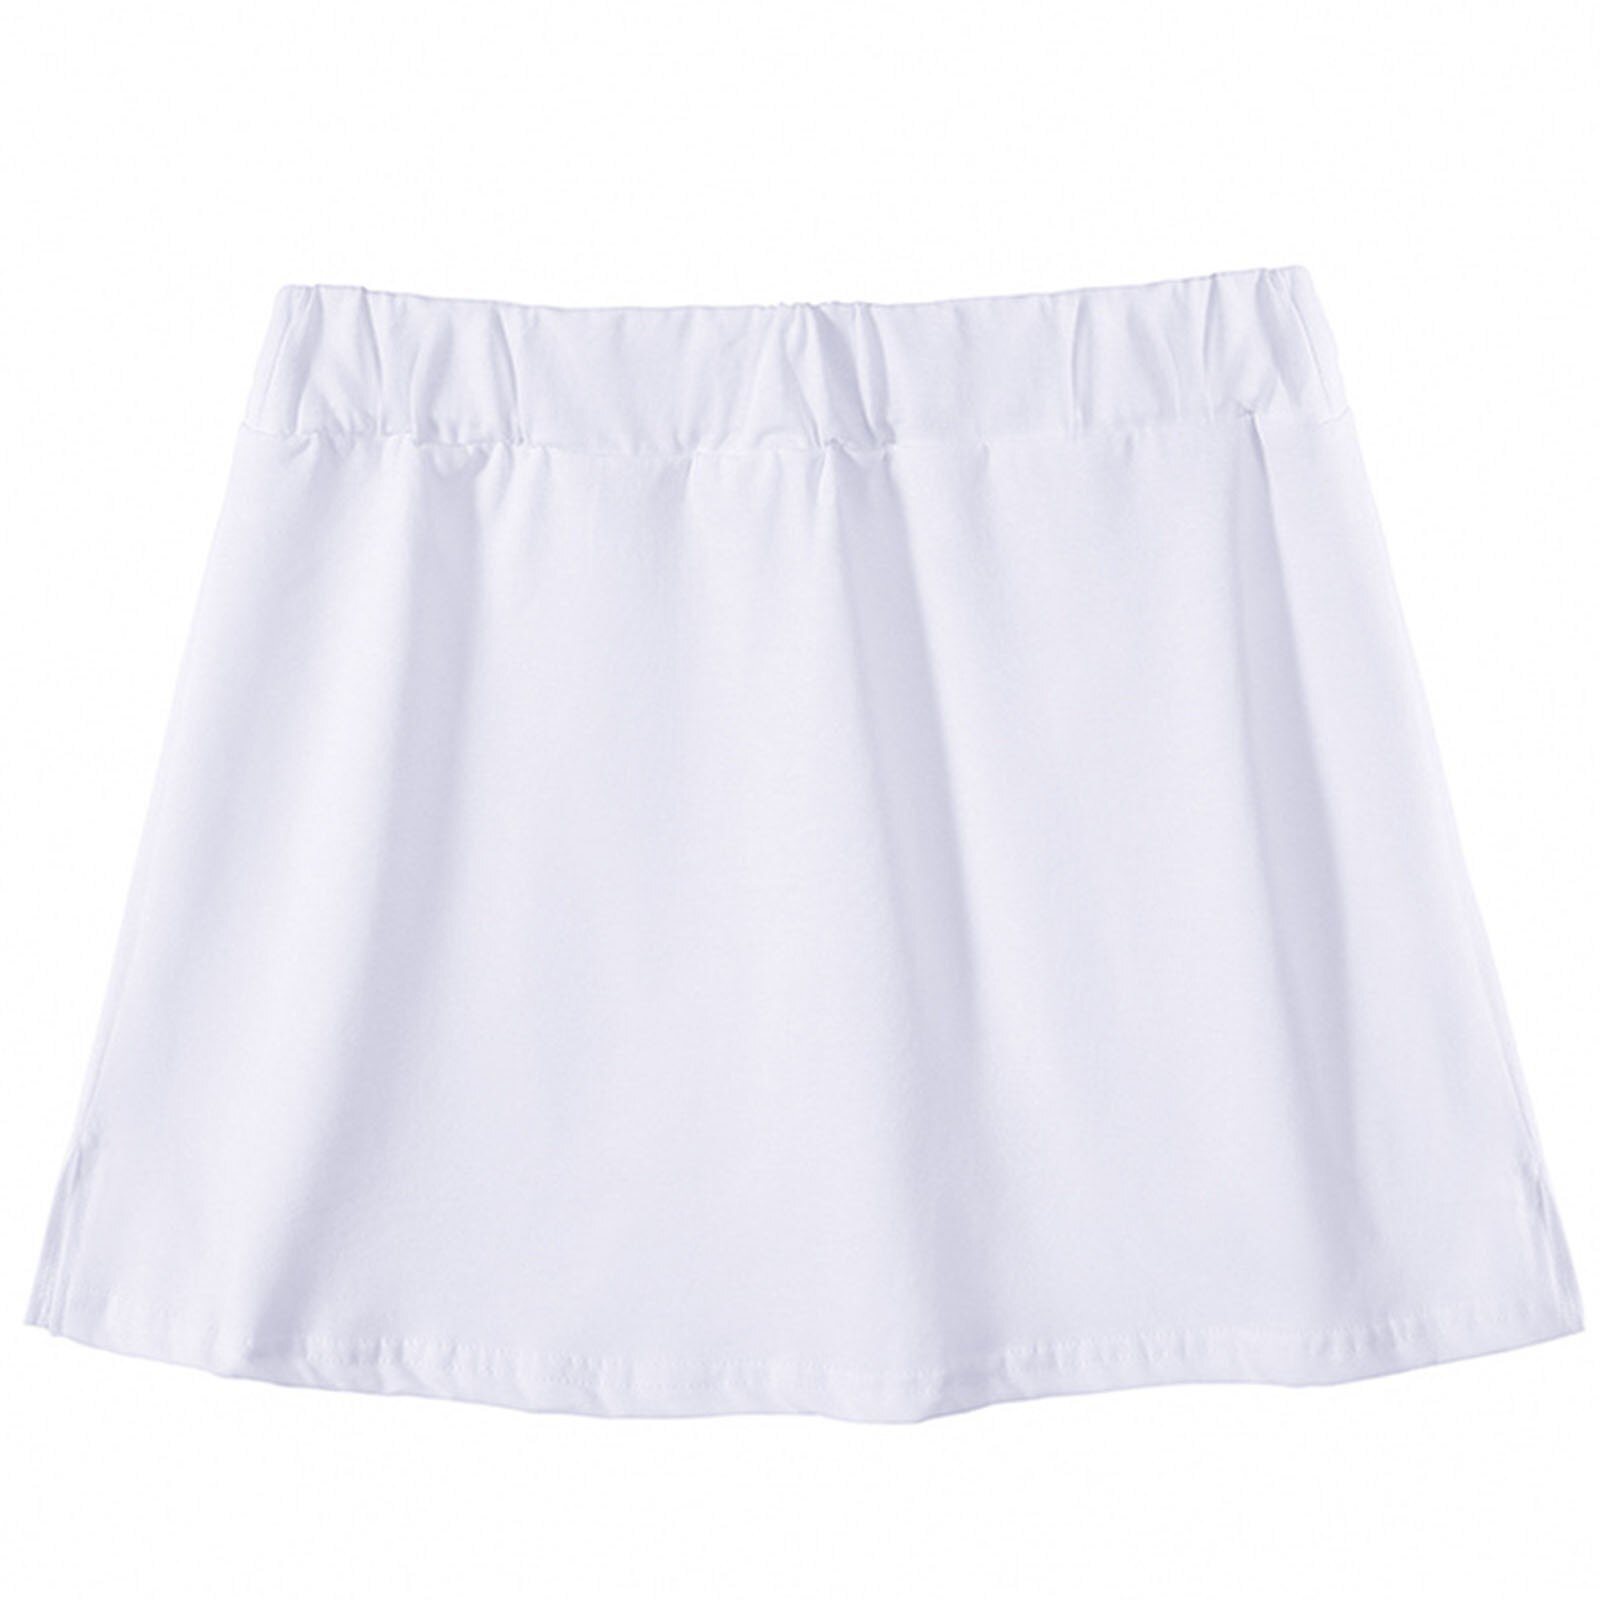 Sommer høj talje sweatshirt base nederdel med kvindelig tennis kort nederdel fire sæsoner all-match mini blød nederdel i forneden #30: Hvid